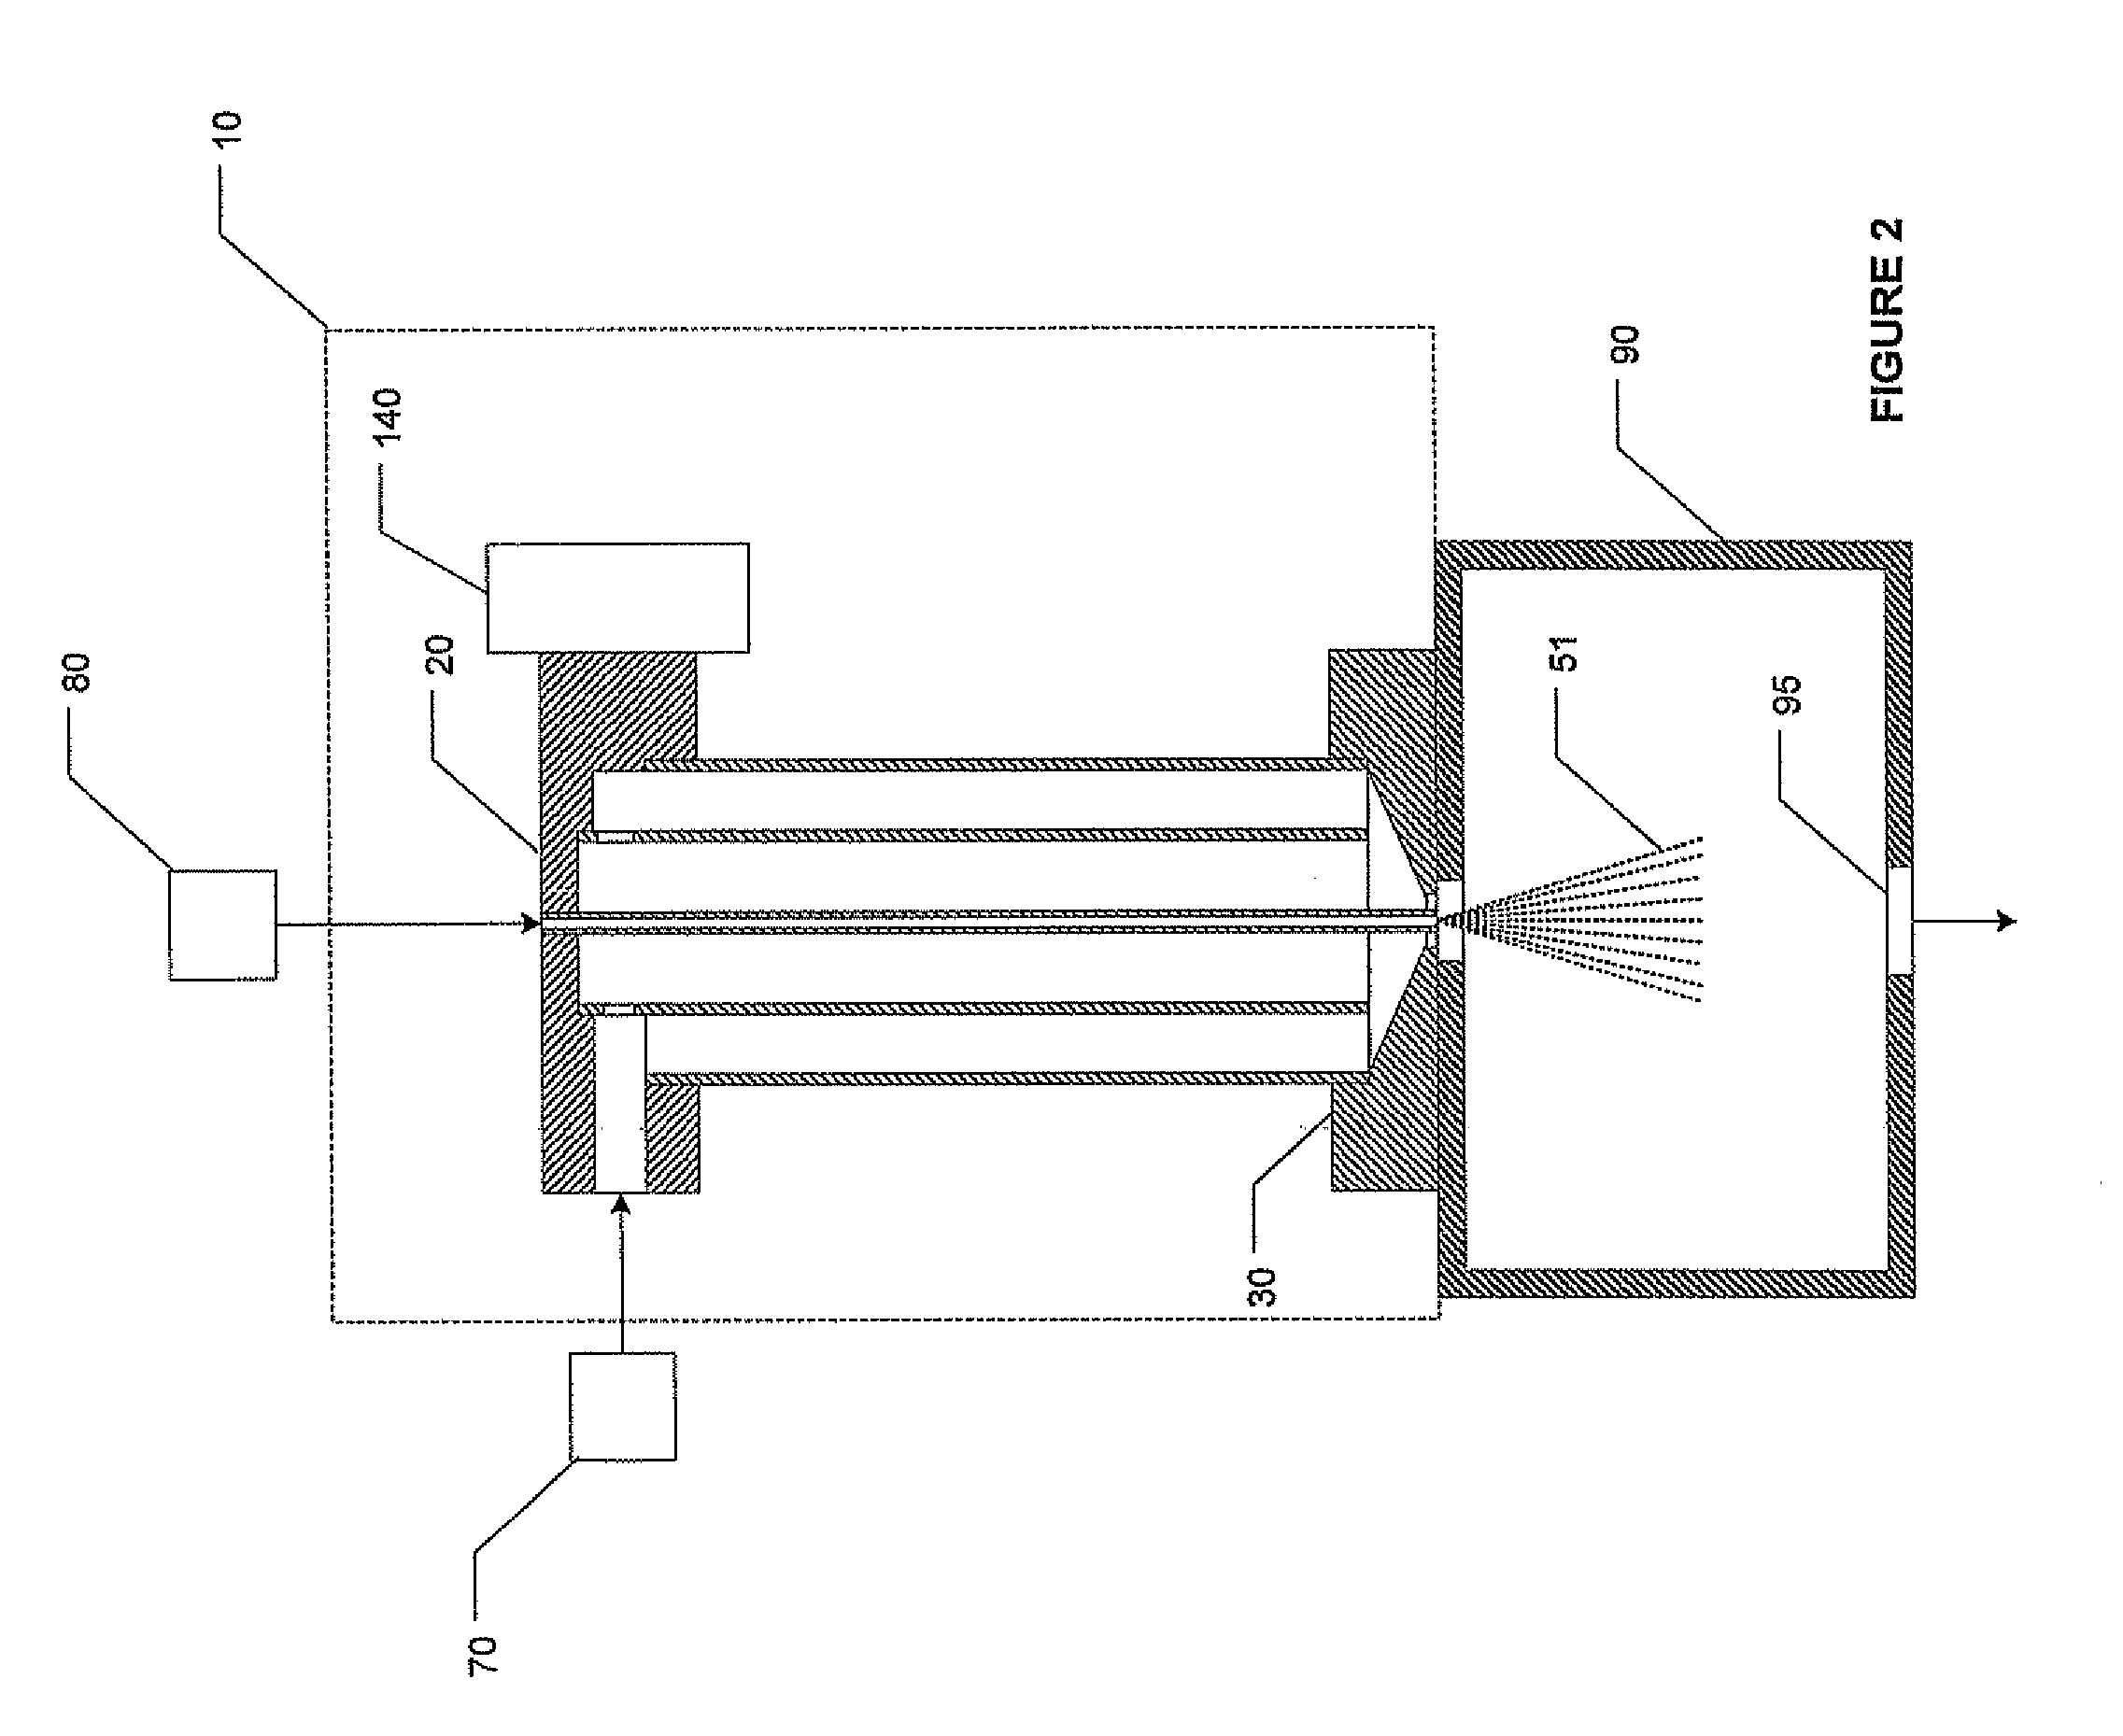 Method and apparatus for liquid precursor atomization